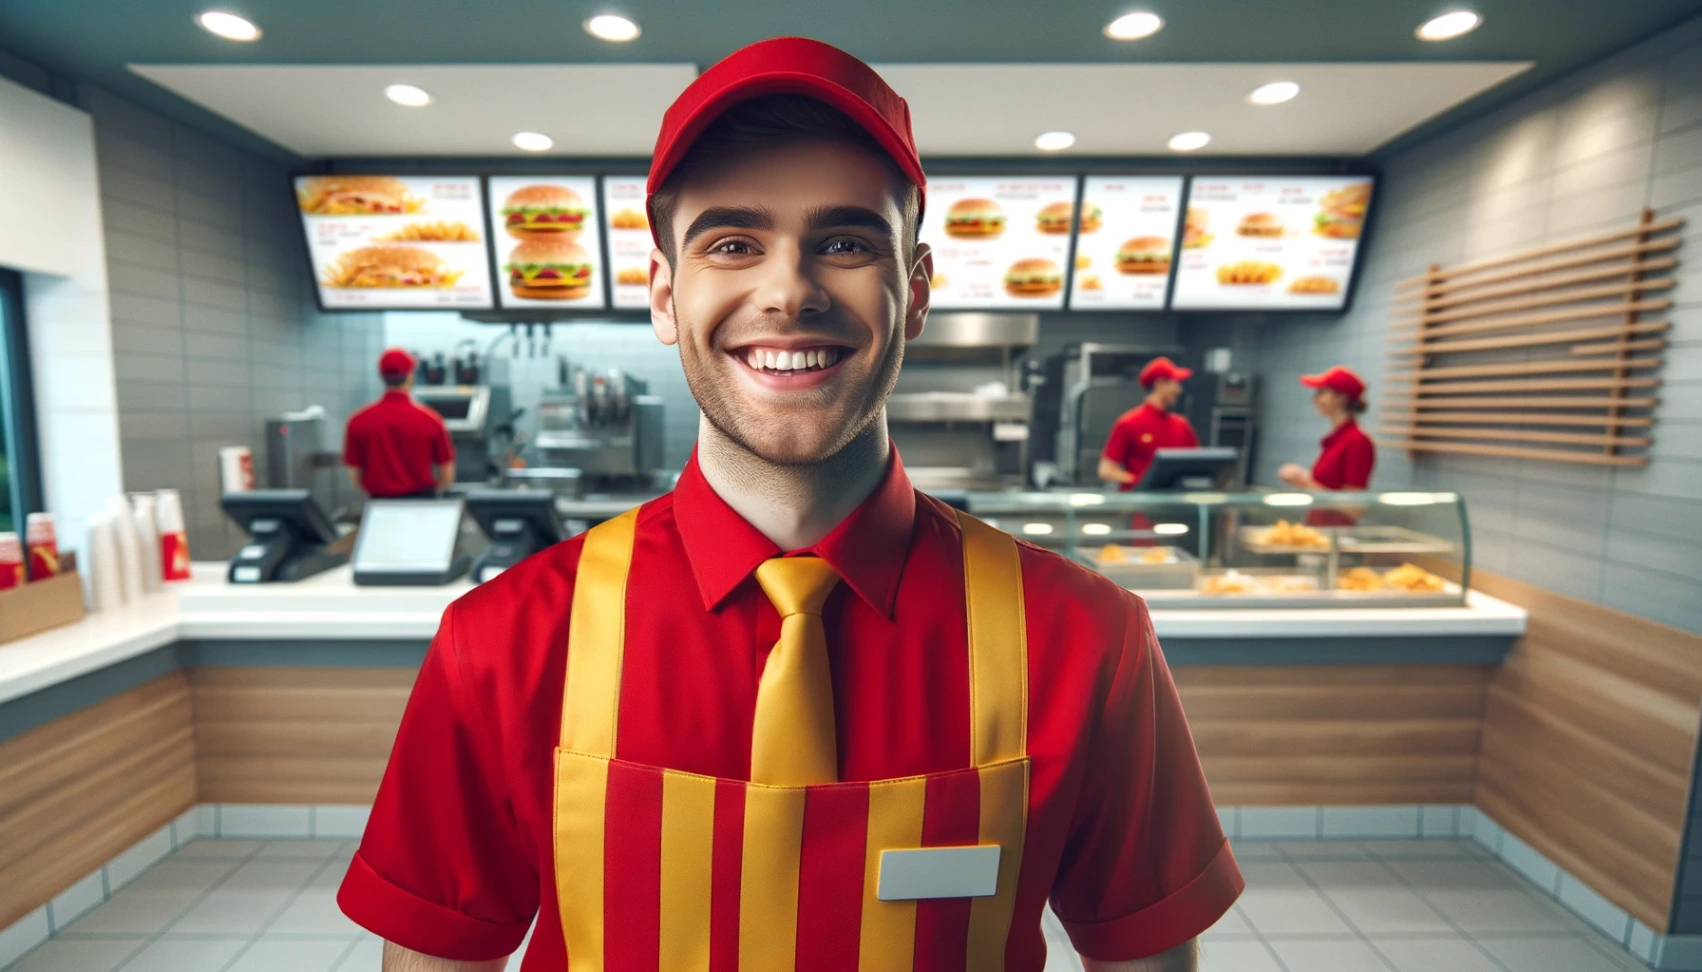 Stellenangebote bei McDonald's: So bewirbst du dich einfach online